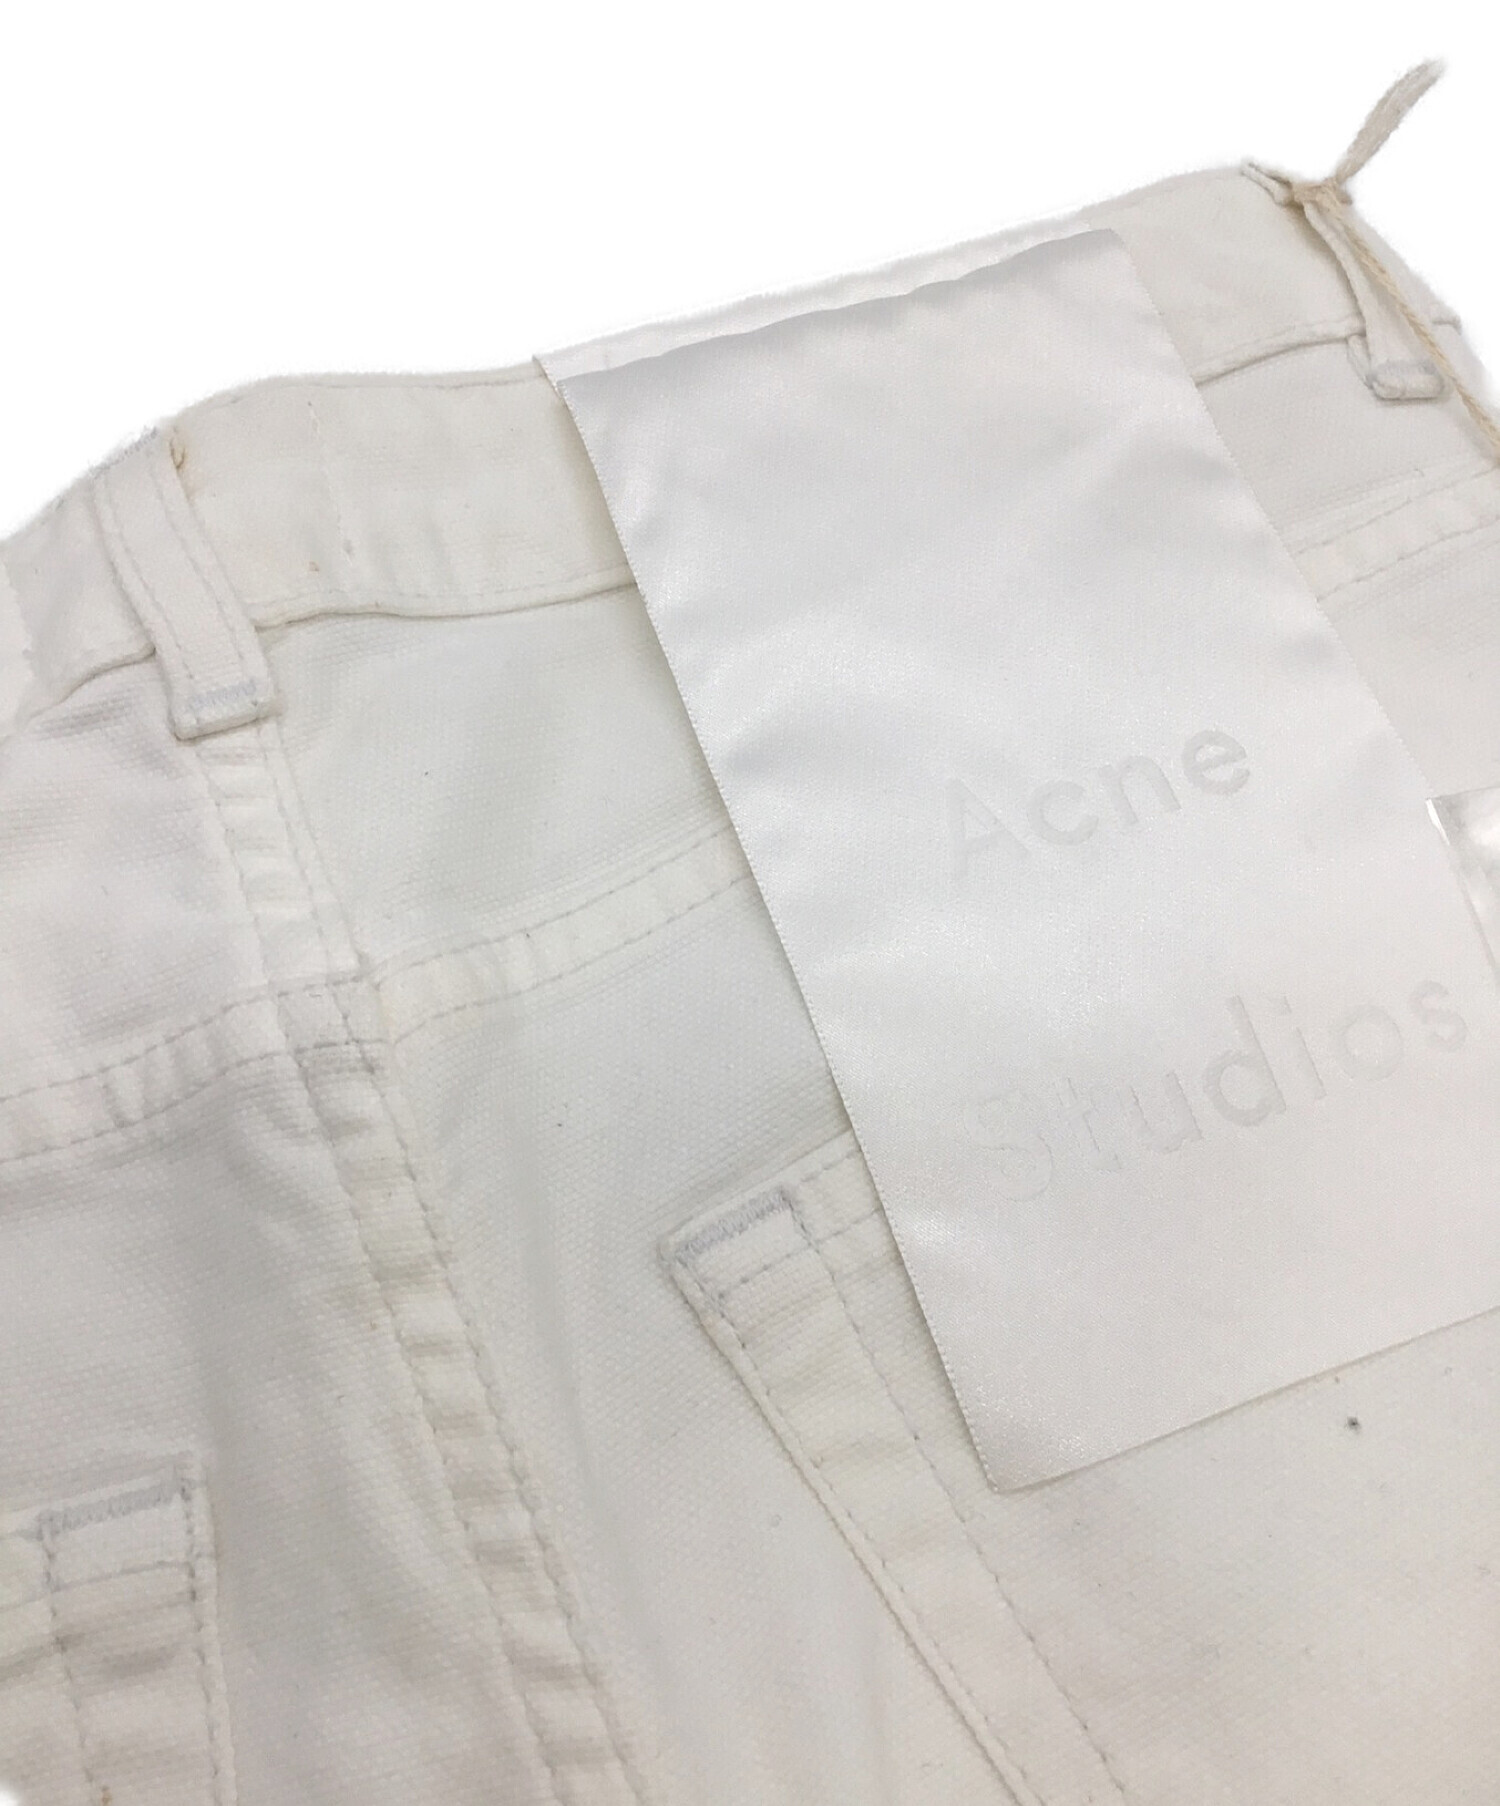 ACNE STUDIOS (アクネストゥディオズ) ジーンズ ホワイト サイズ:32 未使用品